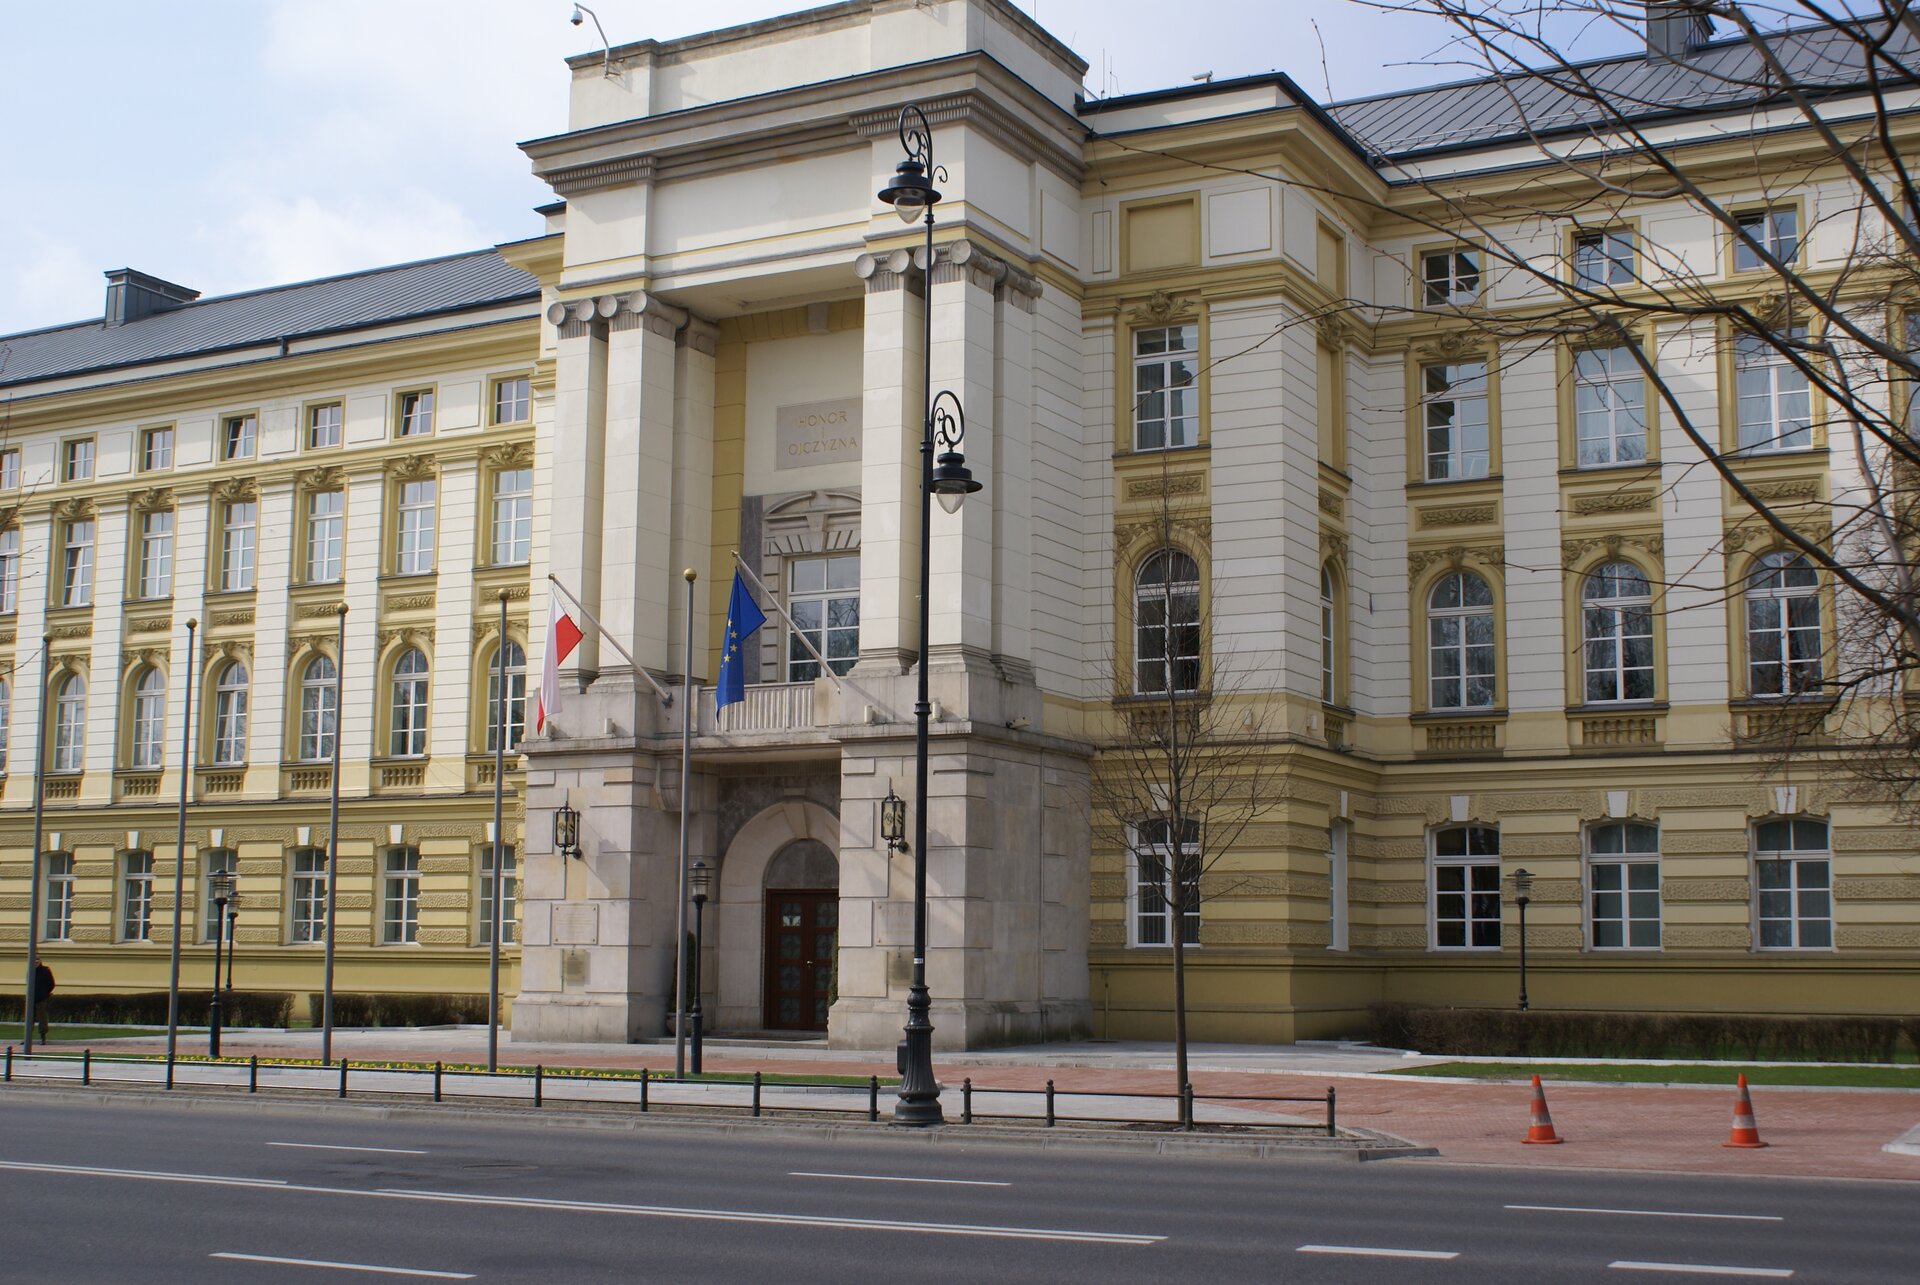 Zdjęcie przedstawia trzypiętrowy budynek. Znajduje się on przy ulicy. Posiada okazałe wejście. Nad wejściem powiewają dwie flagi: Polski i Unii Europejskiej. 